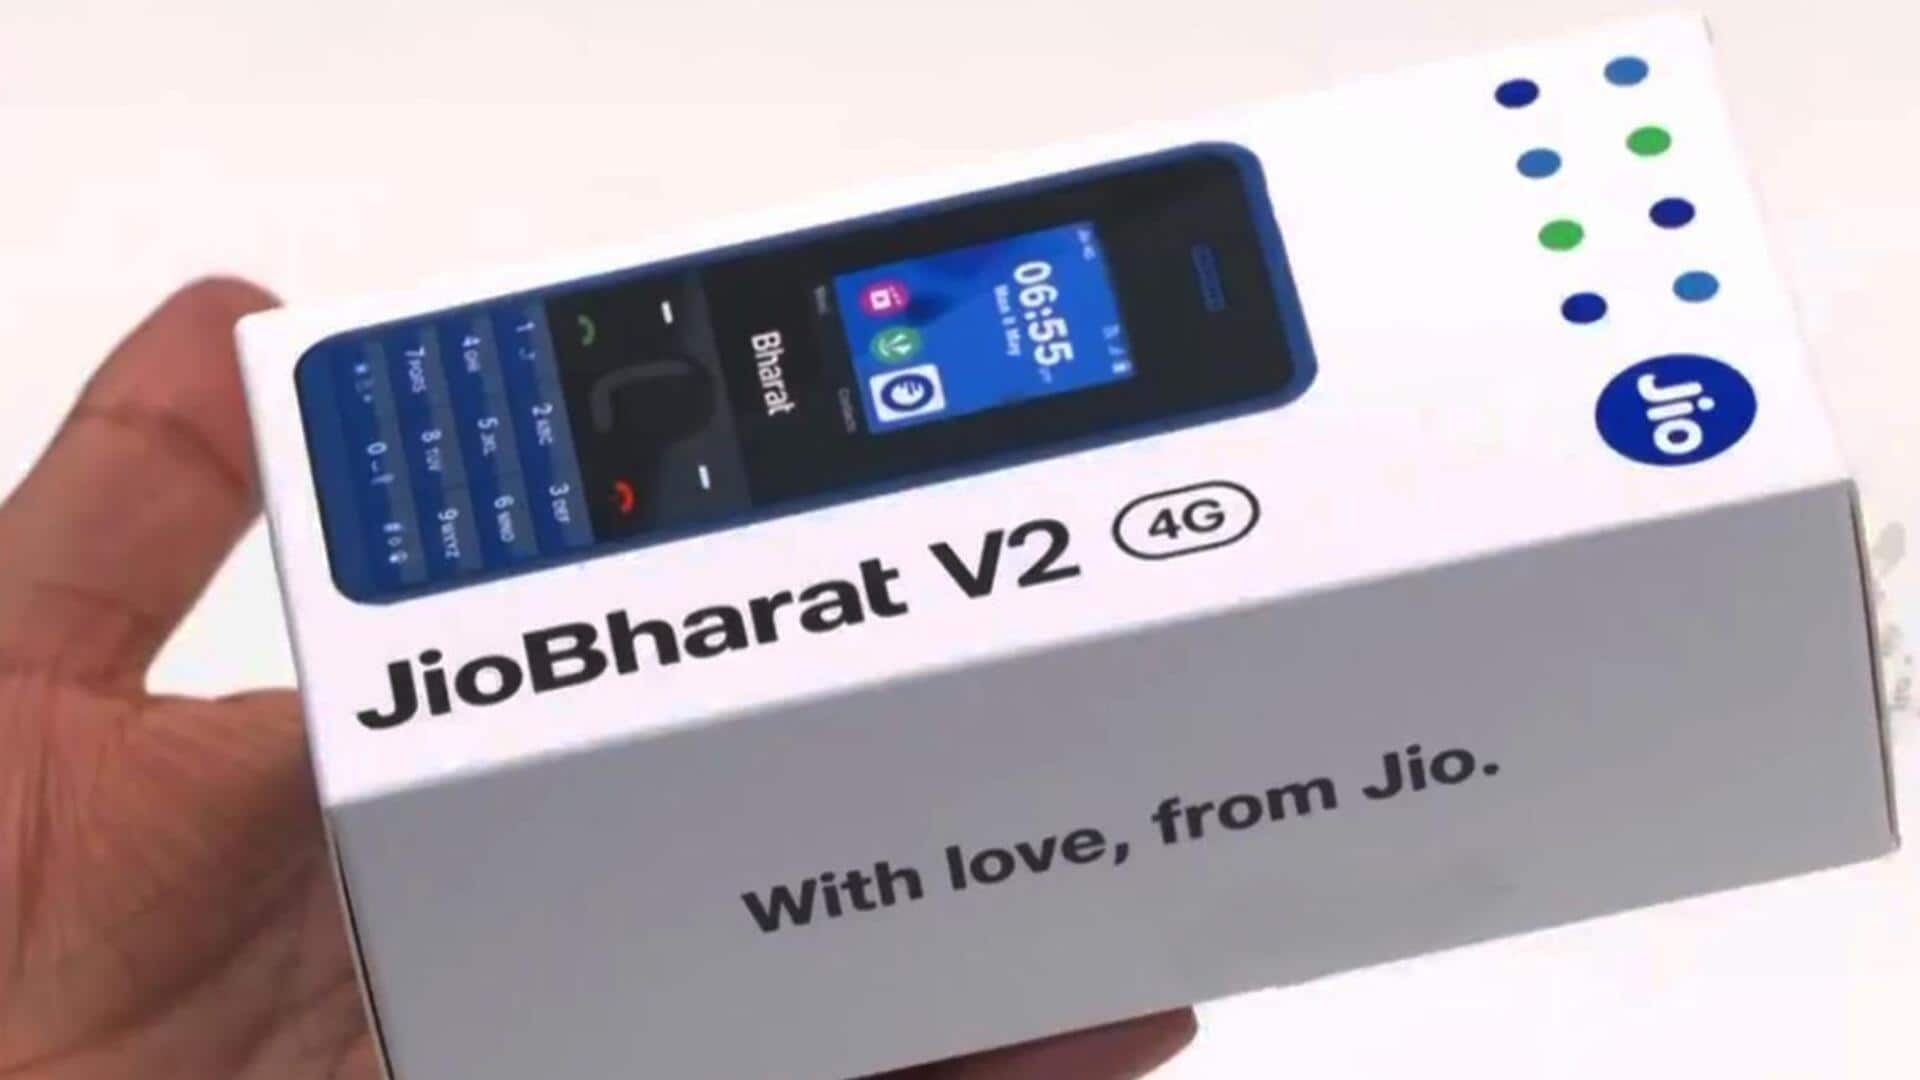 जियो ने 999 रुपये में लॉन्च किया जियो भारत V2 4G इंटरनेट फोन, जानिए खासियत